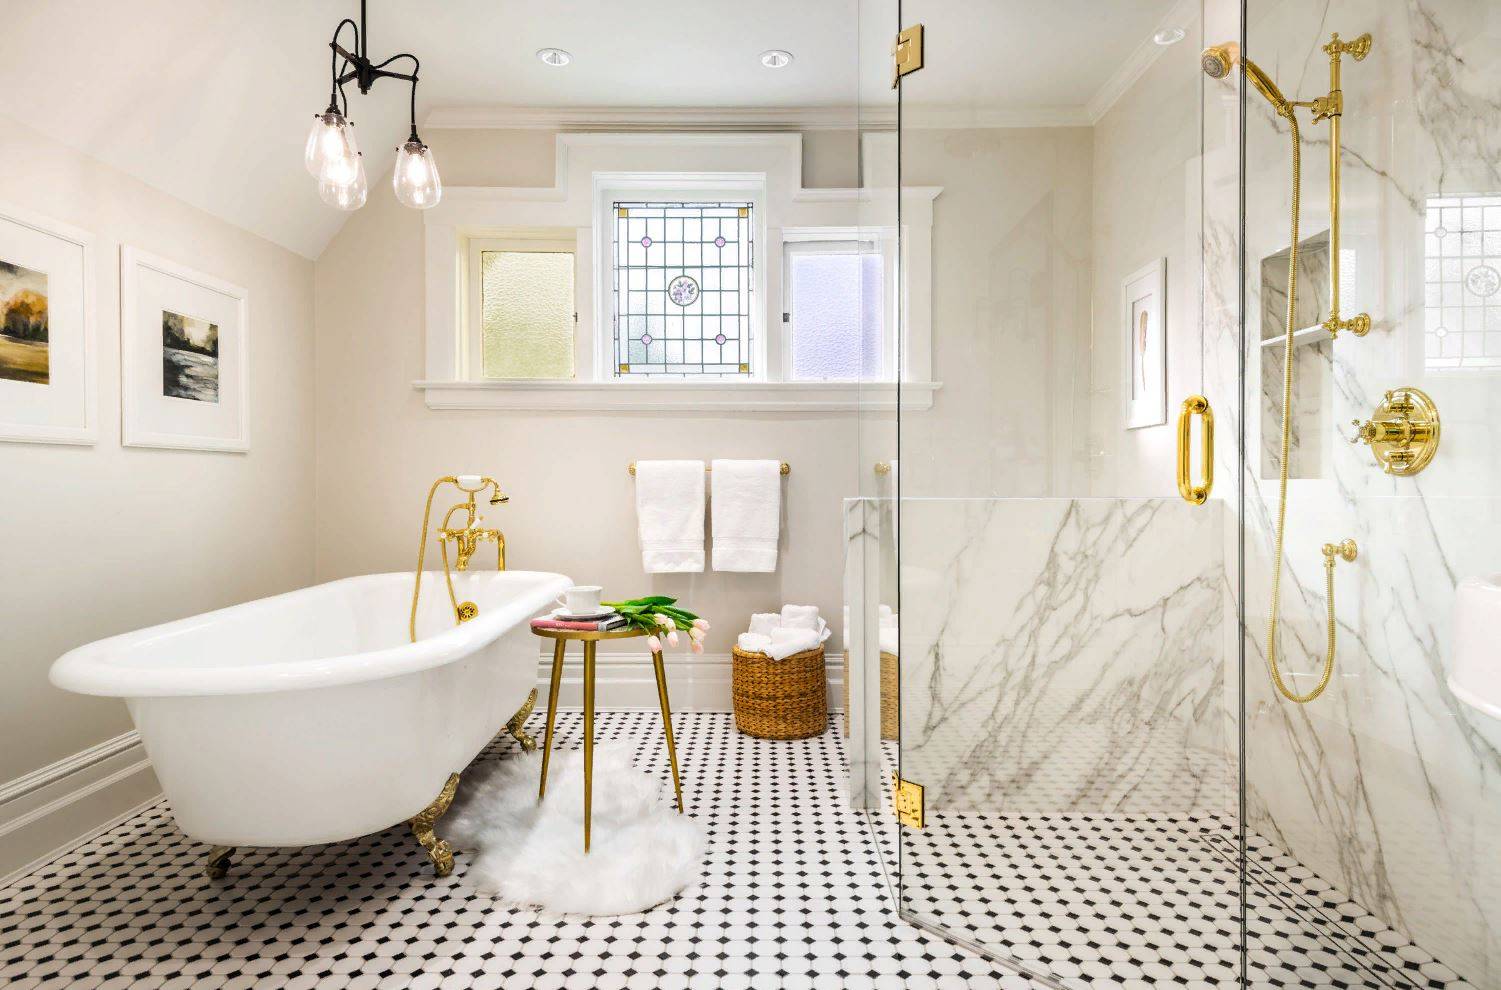 Стиль для ванной комнаты – какой выбрать? ищем гармоничные решения